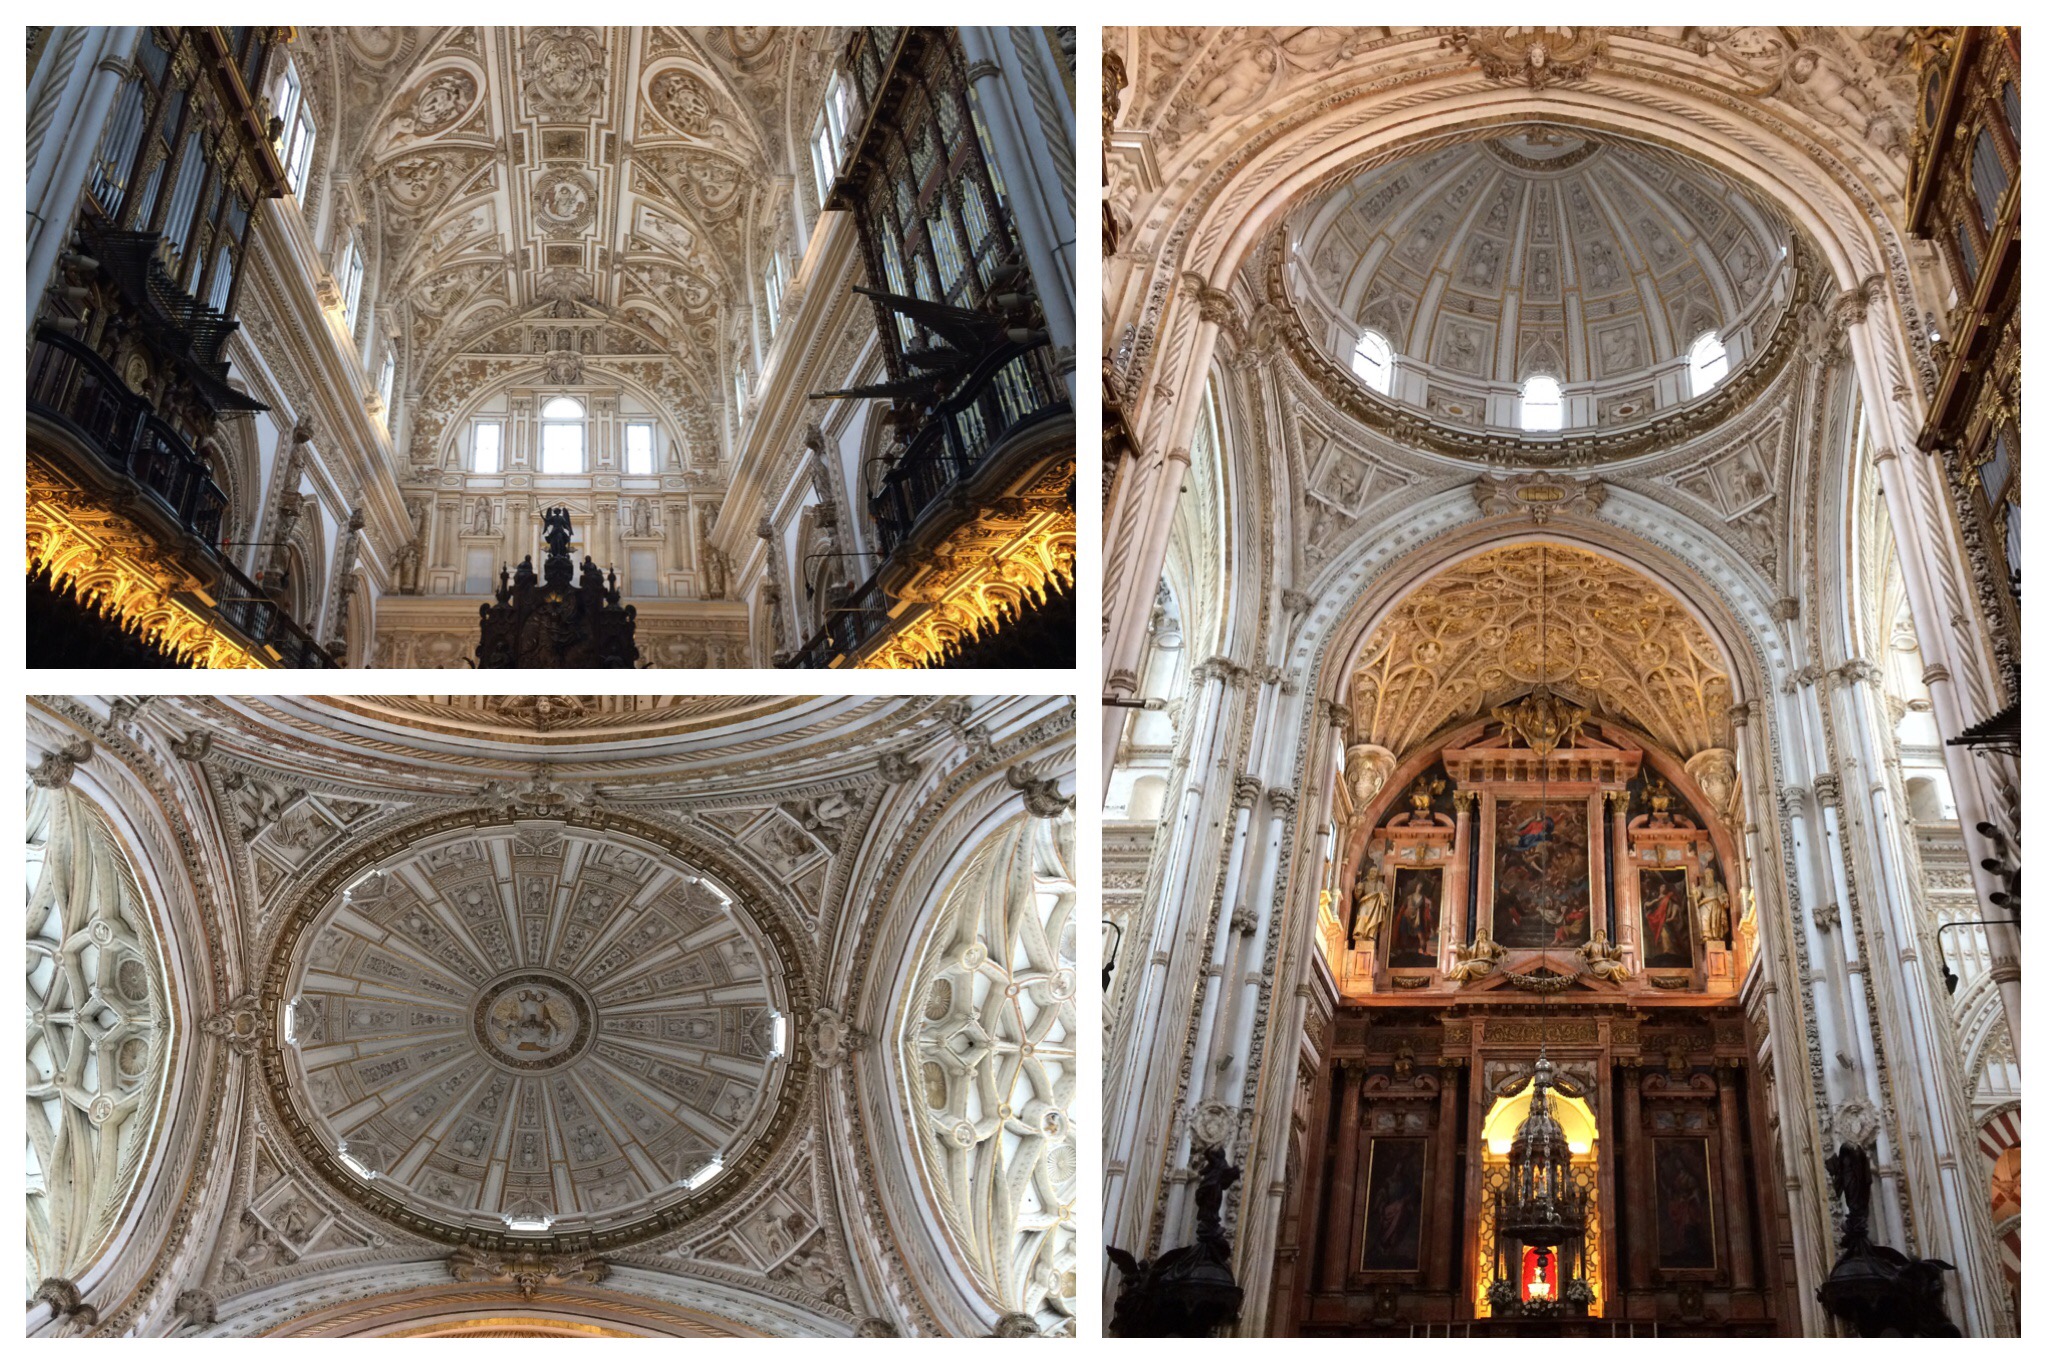 Córdoba Mesquita Mosque-Church baroque interior